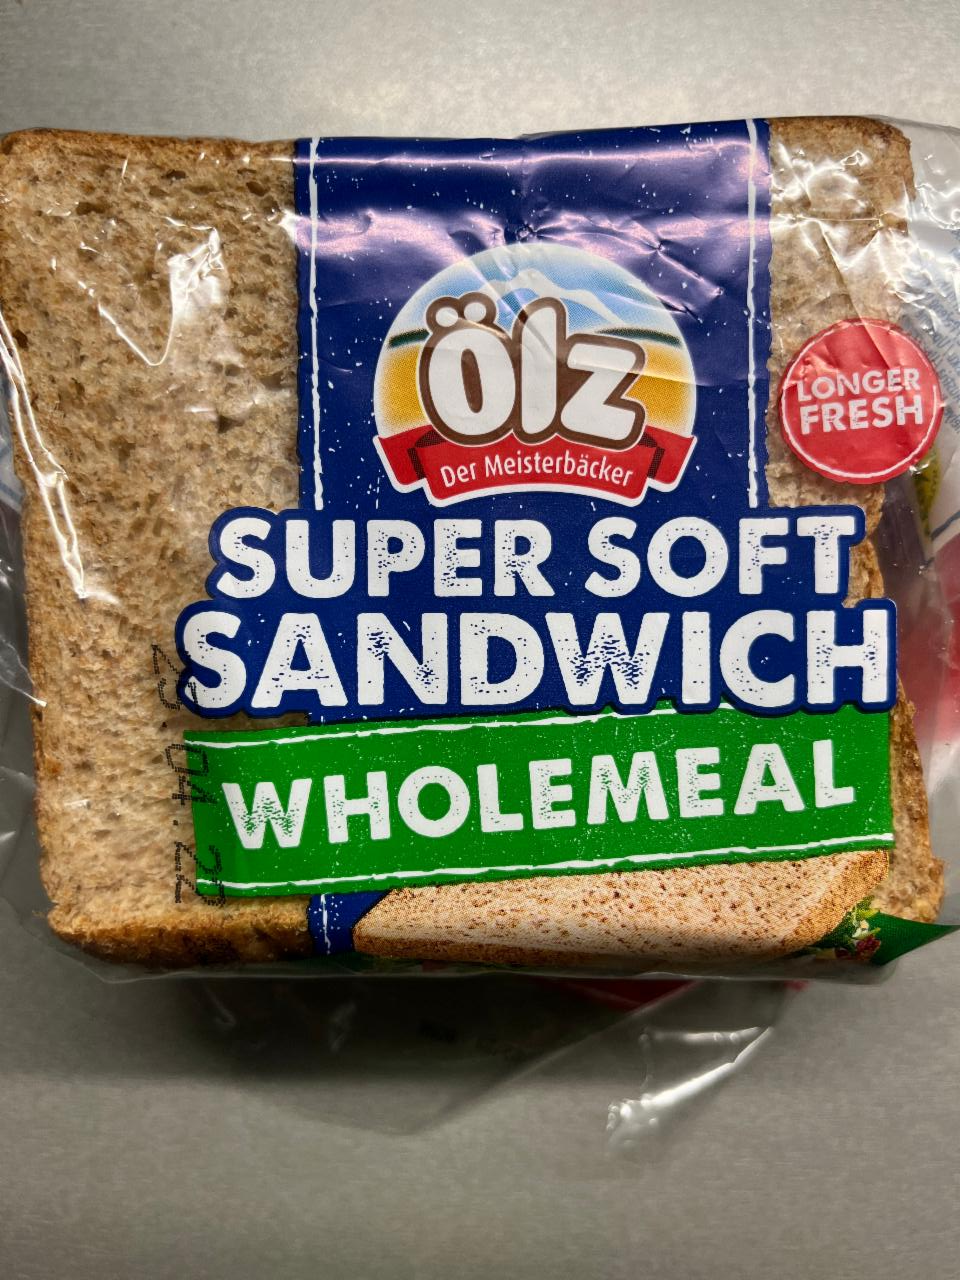 Képek - Super soft sandwich wholemeal Ölz